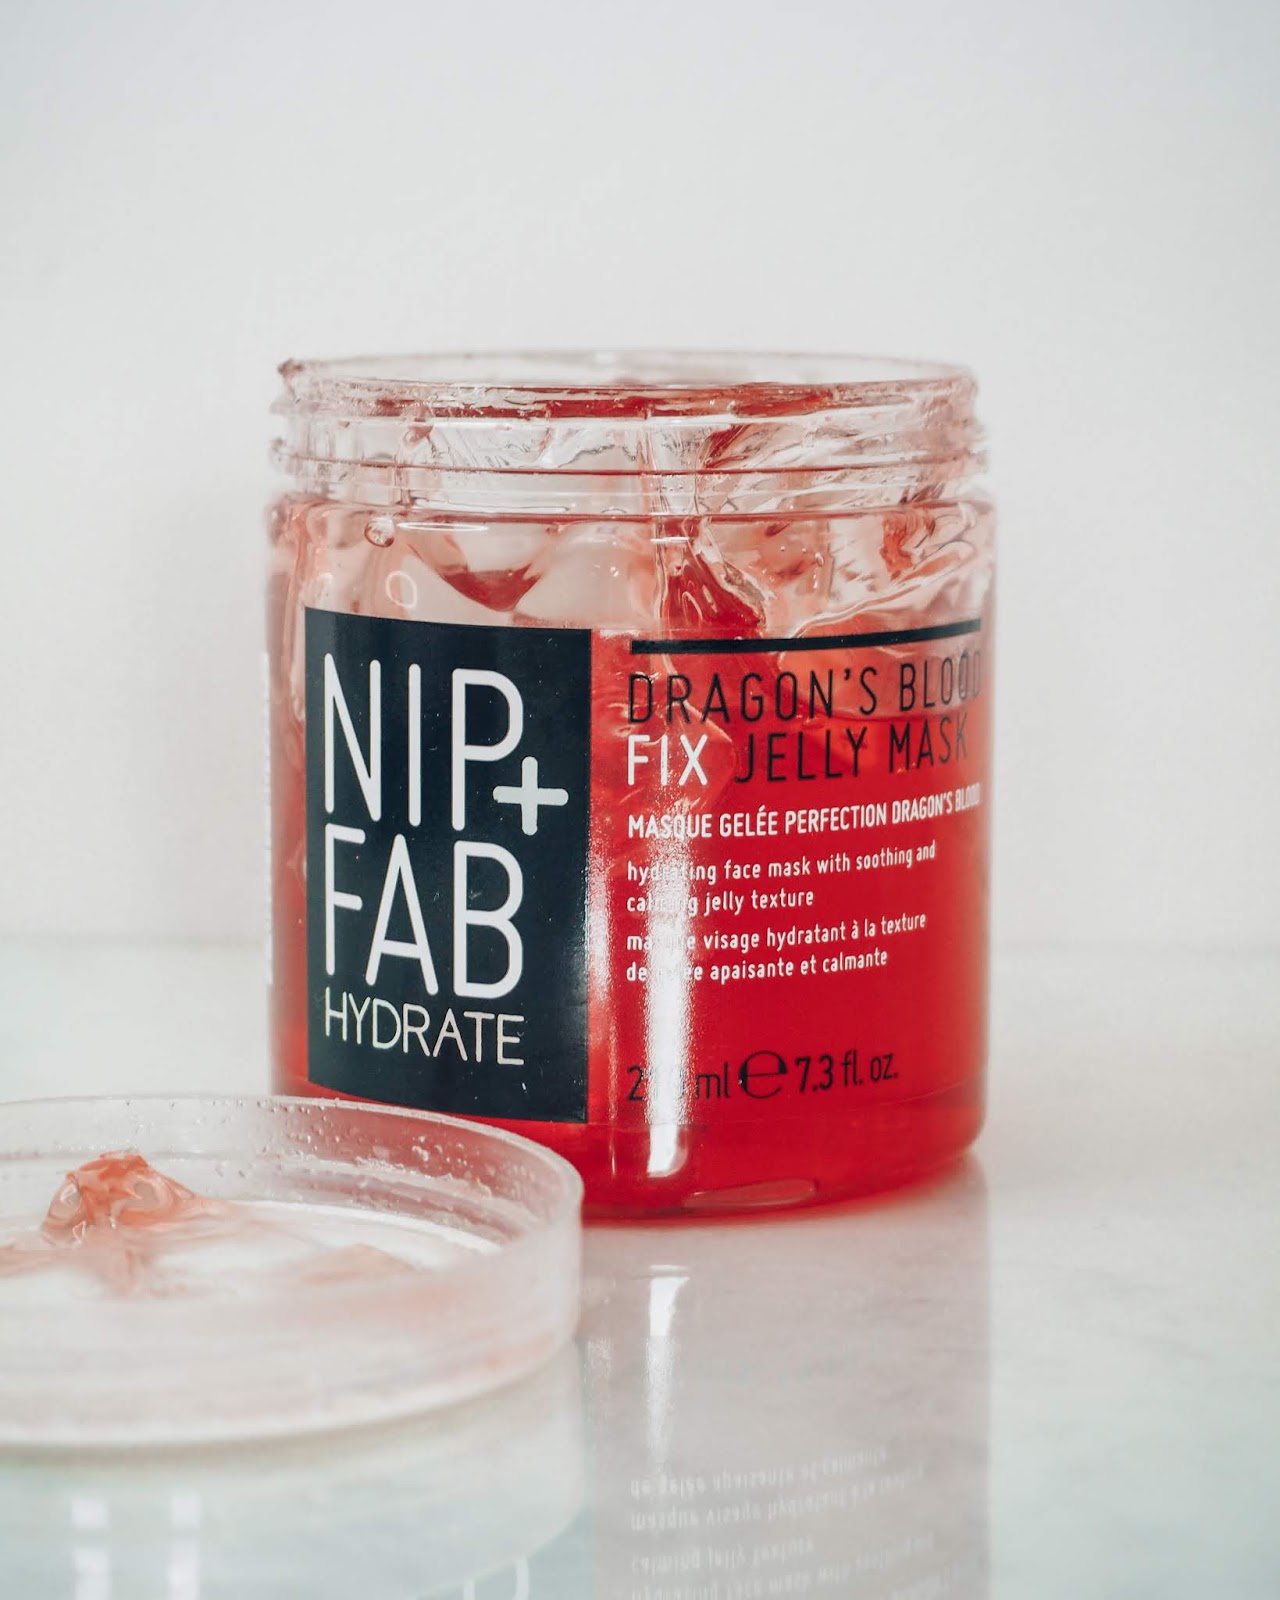  NIP+FAB Dragons Blood Fix Jelly Mask.